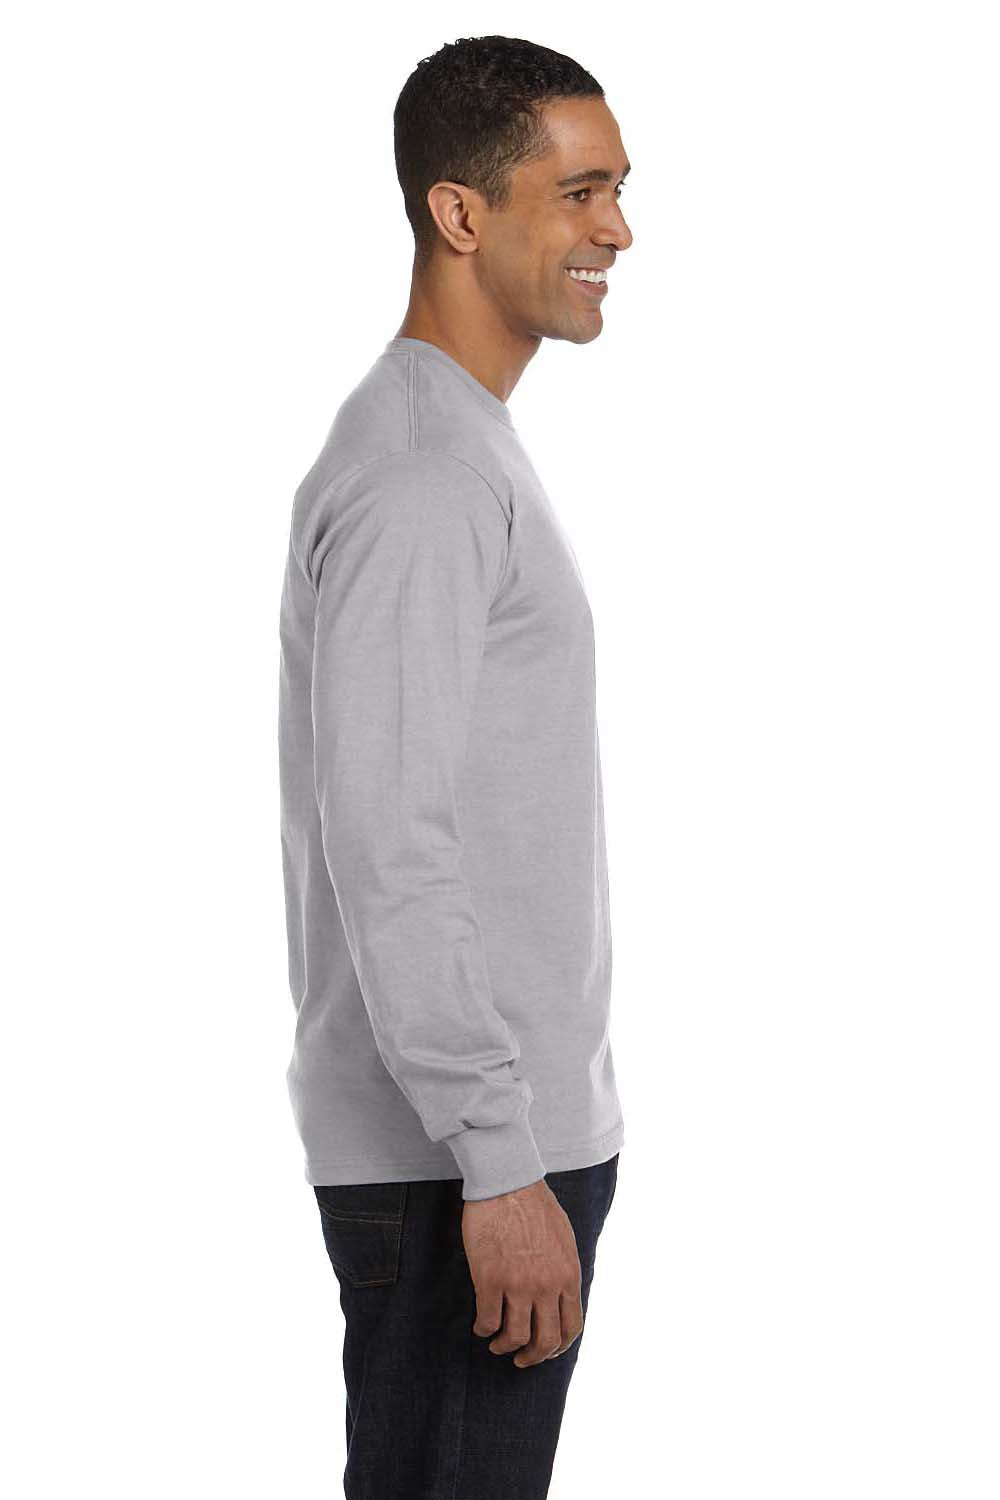 Gildan G840 Mens DryBlend Moisture Wicking Long Sleeve Crewneck T-Shirt Sport Grey Side